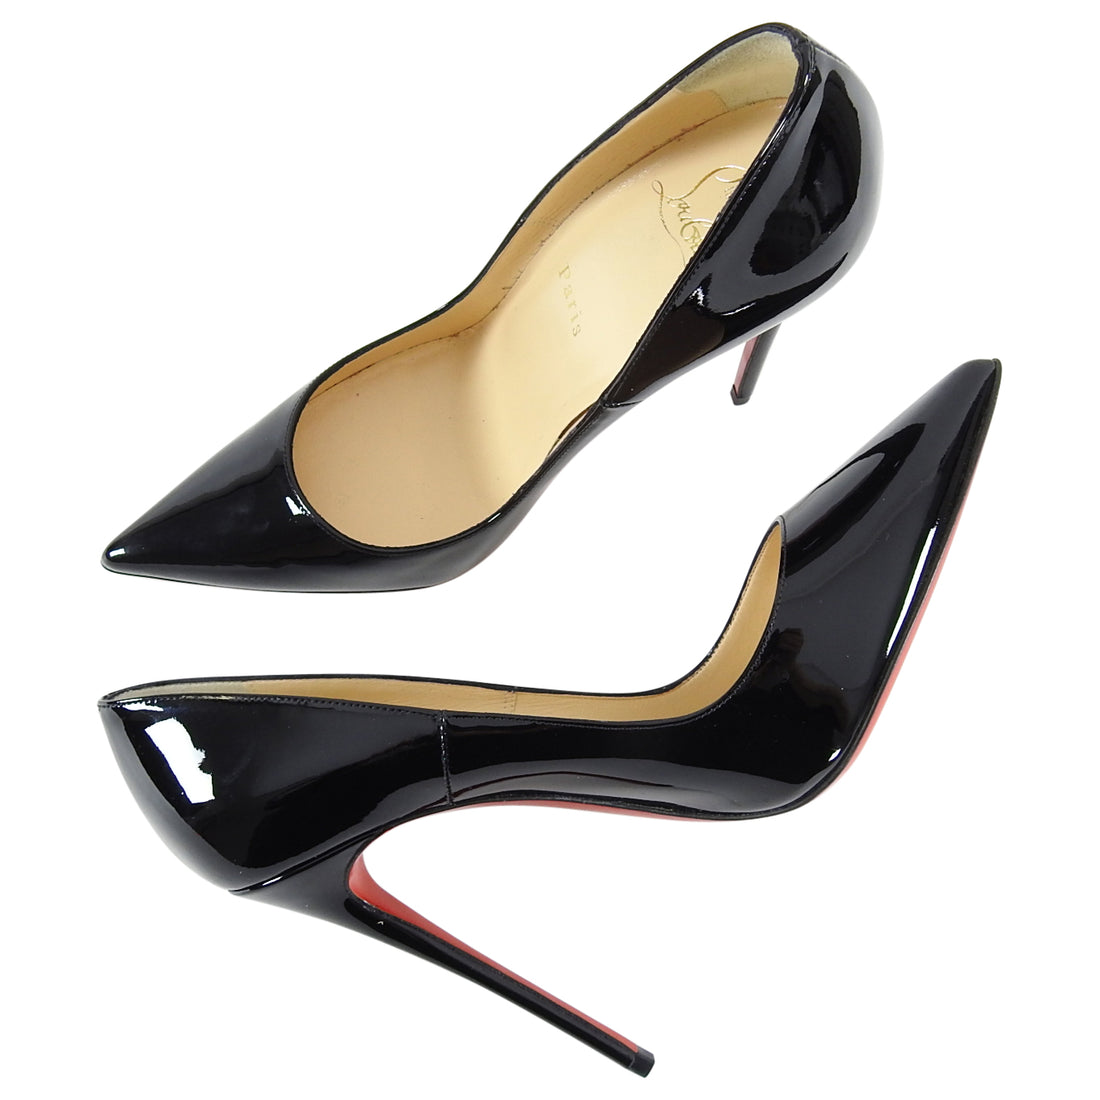 Christian Louboutin So Kate Patent Leather Black Stiletto Heel